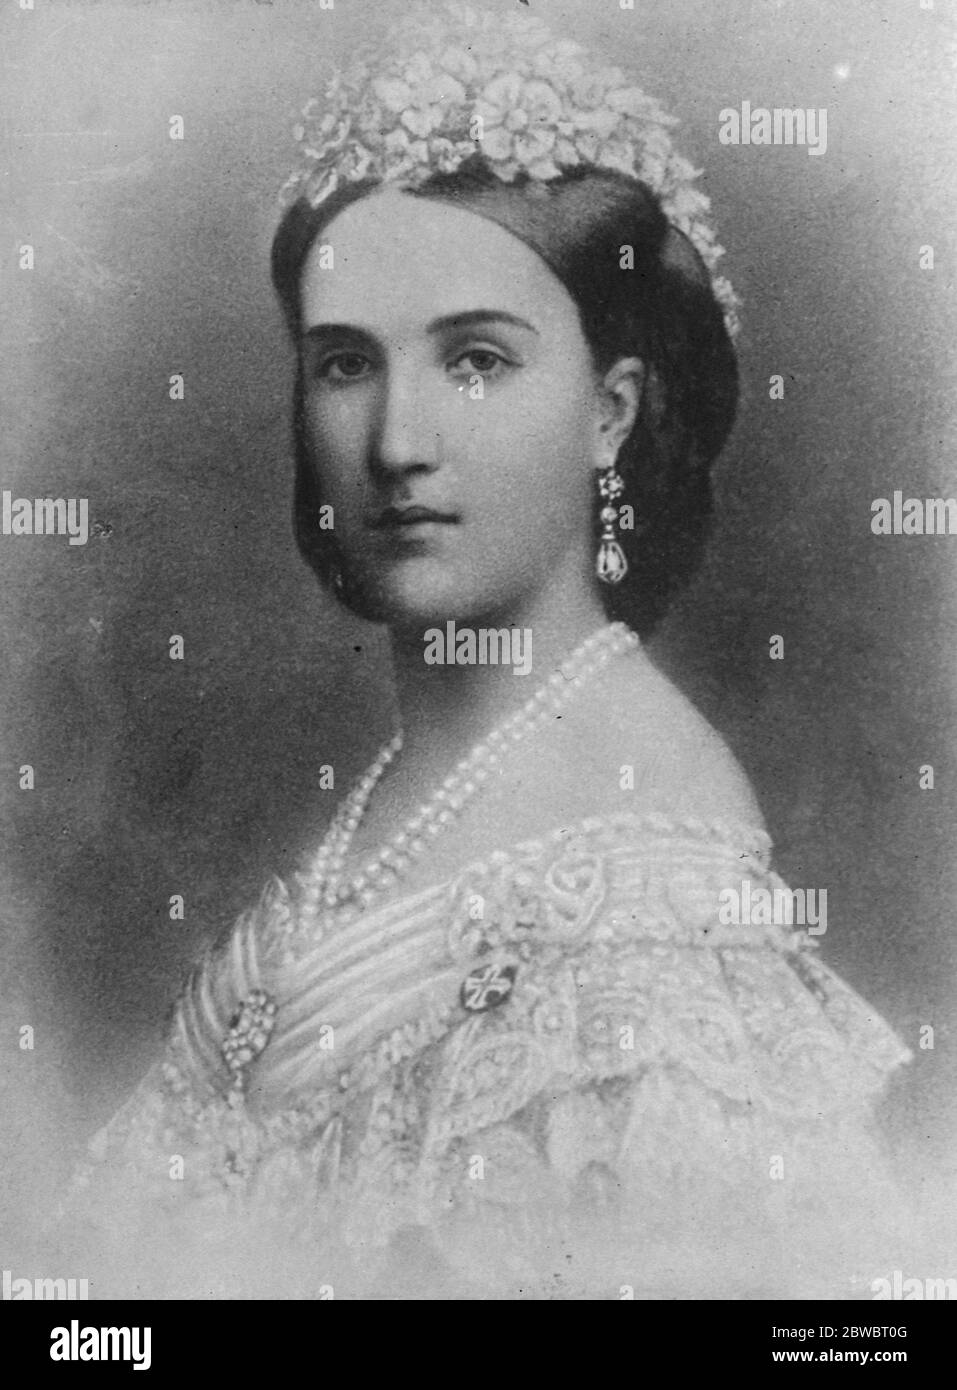 Princesa Charlotte tía del Rey Alberto 1 de abril de 1925 Foto de stock